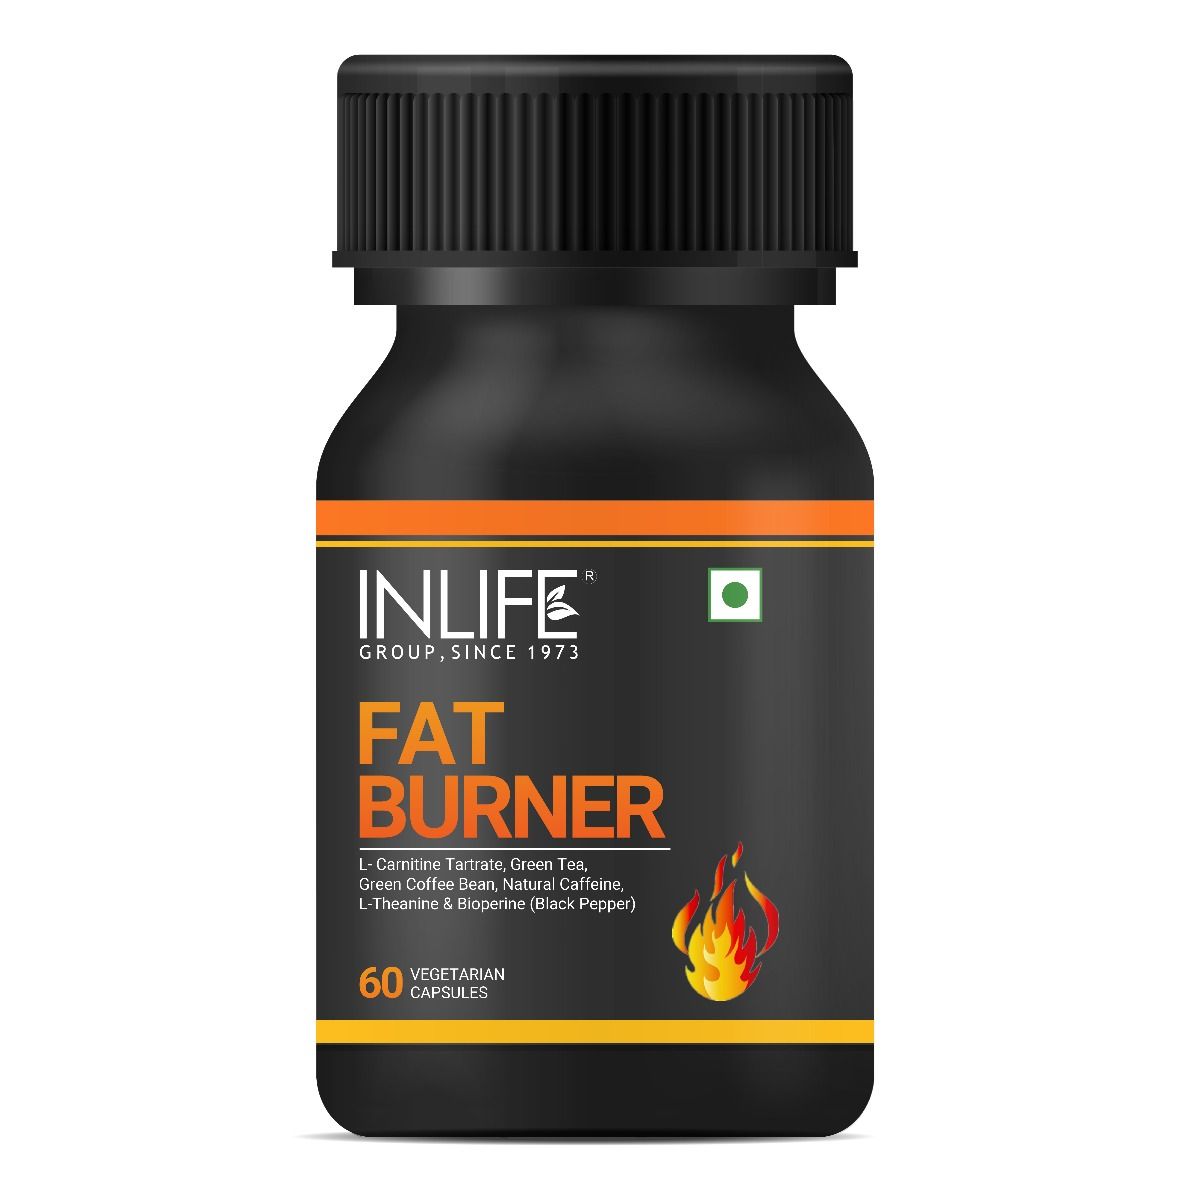 Buy Inlife Fat Burner, 60 Capsules Online